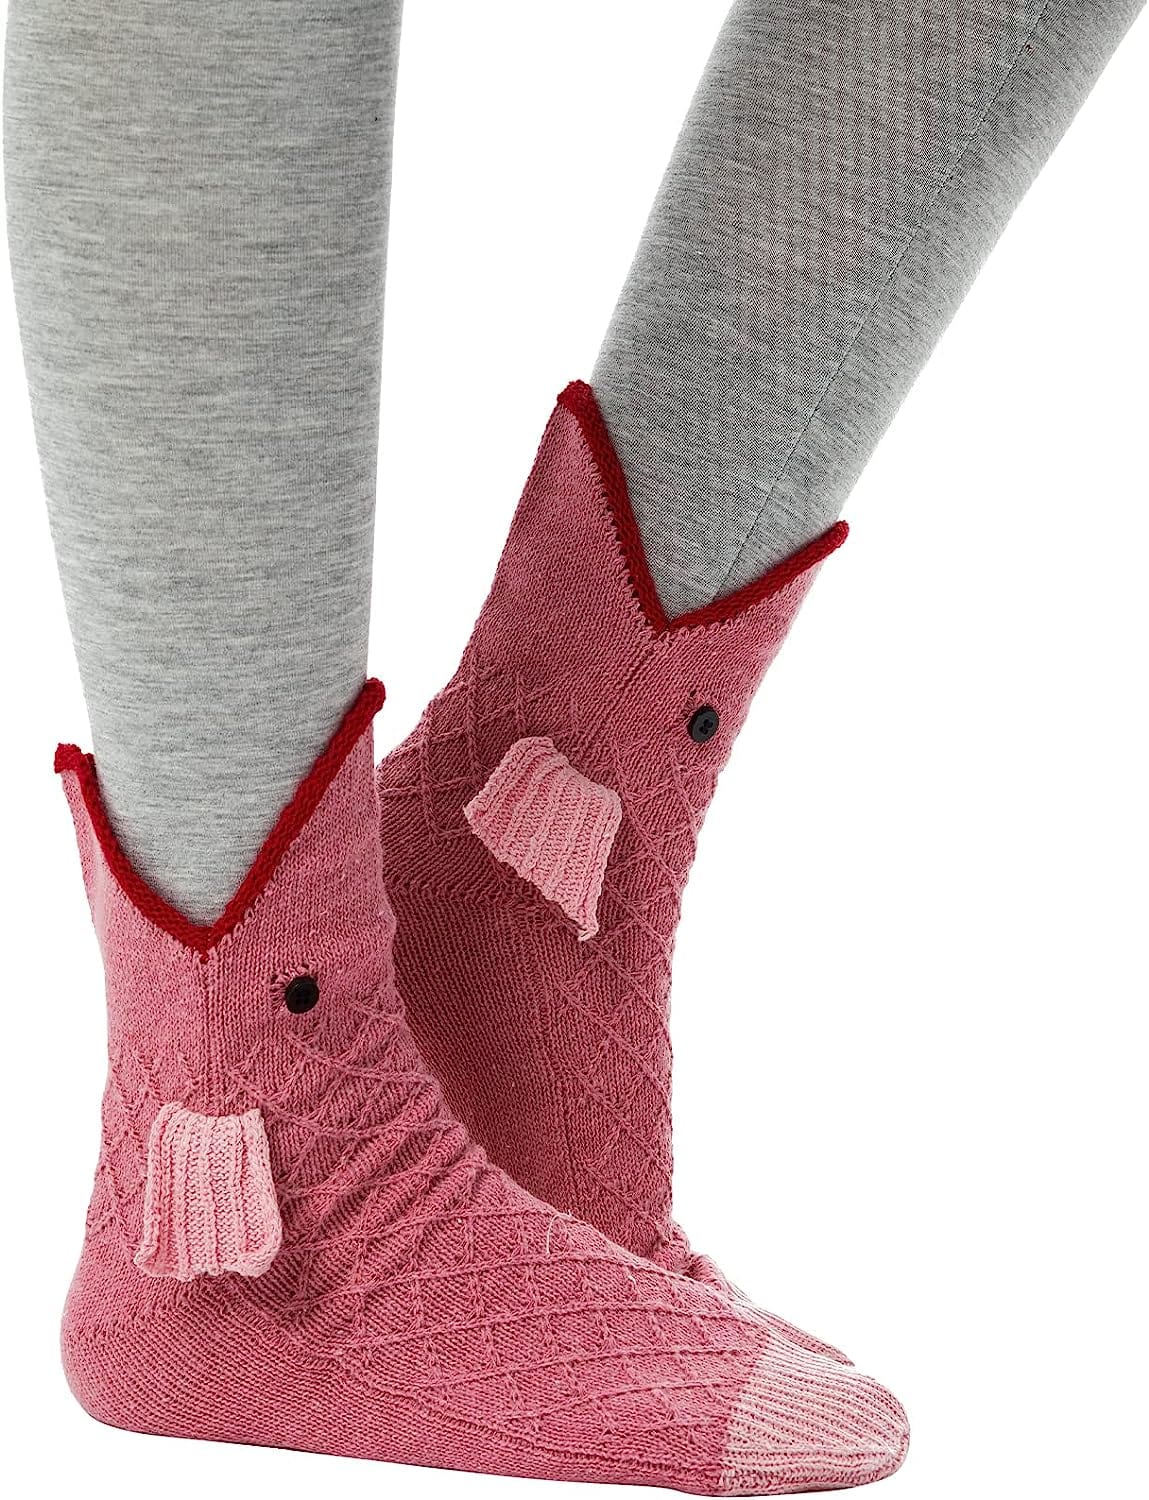 THATLILSHOP One Size / Carp Women Men Novelty Animal Pattern Socks Crazy Funny Knit Crocodile Socks Funny Gifts